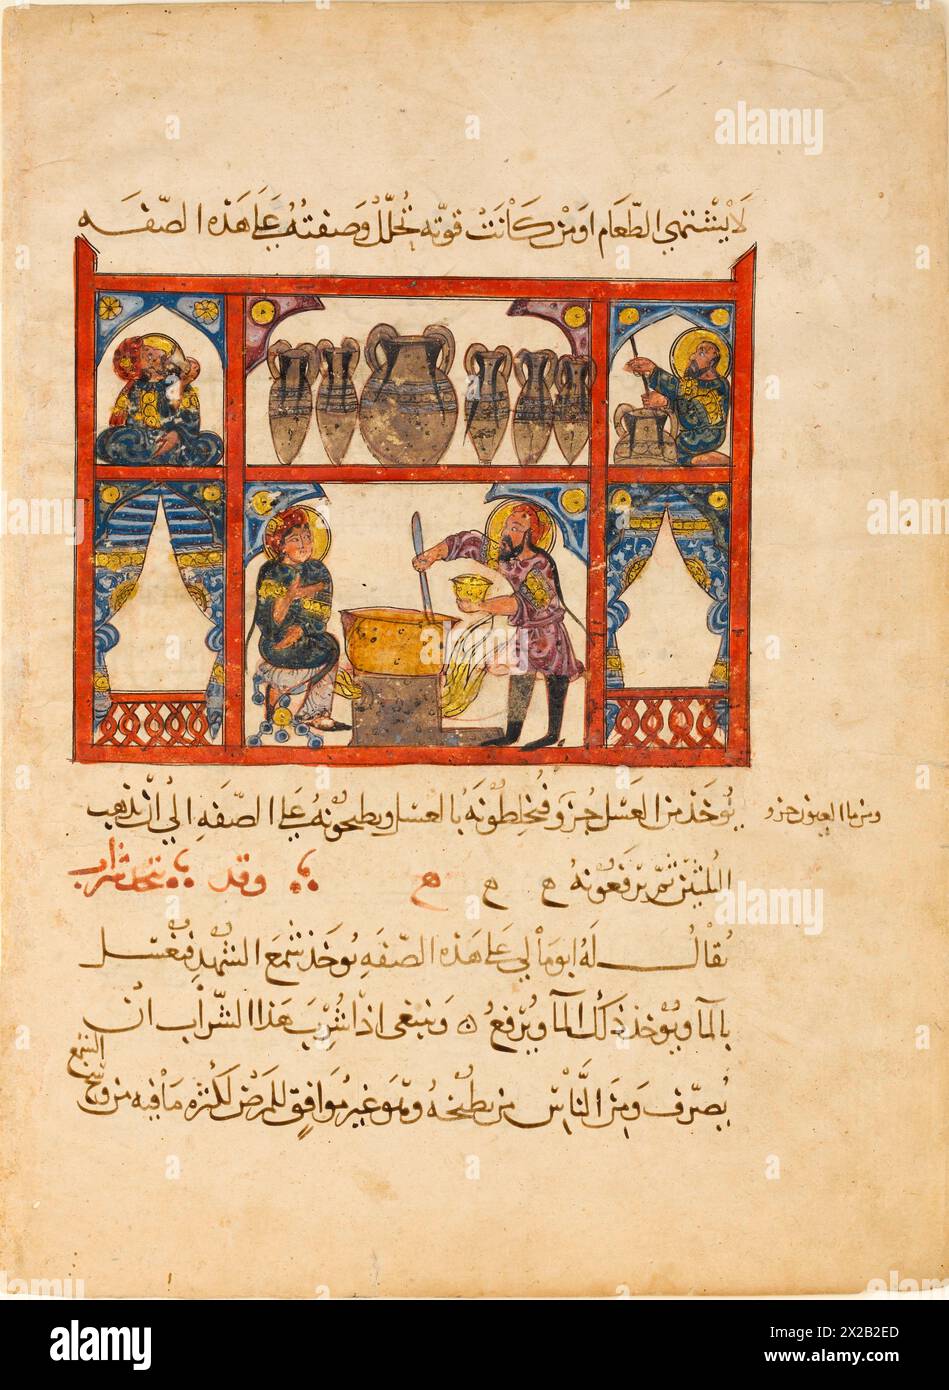 Préparer la médecine à partir du miel', tiré d'un manuscrit dispersé d'une traduction arabe de Materia Medica de Dioscoride Banque D'Images